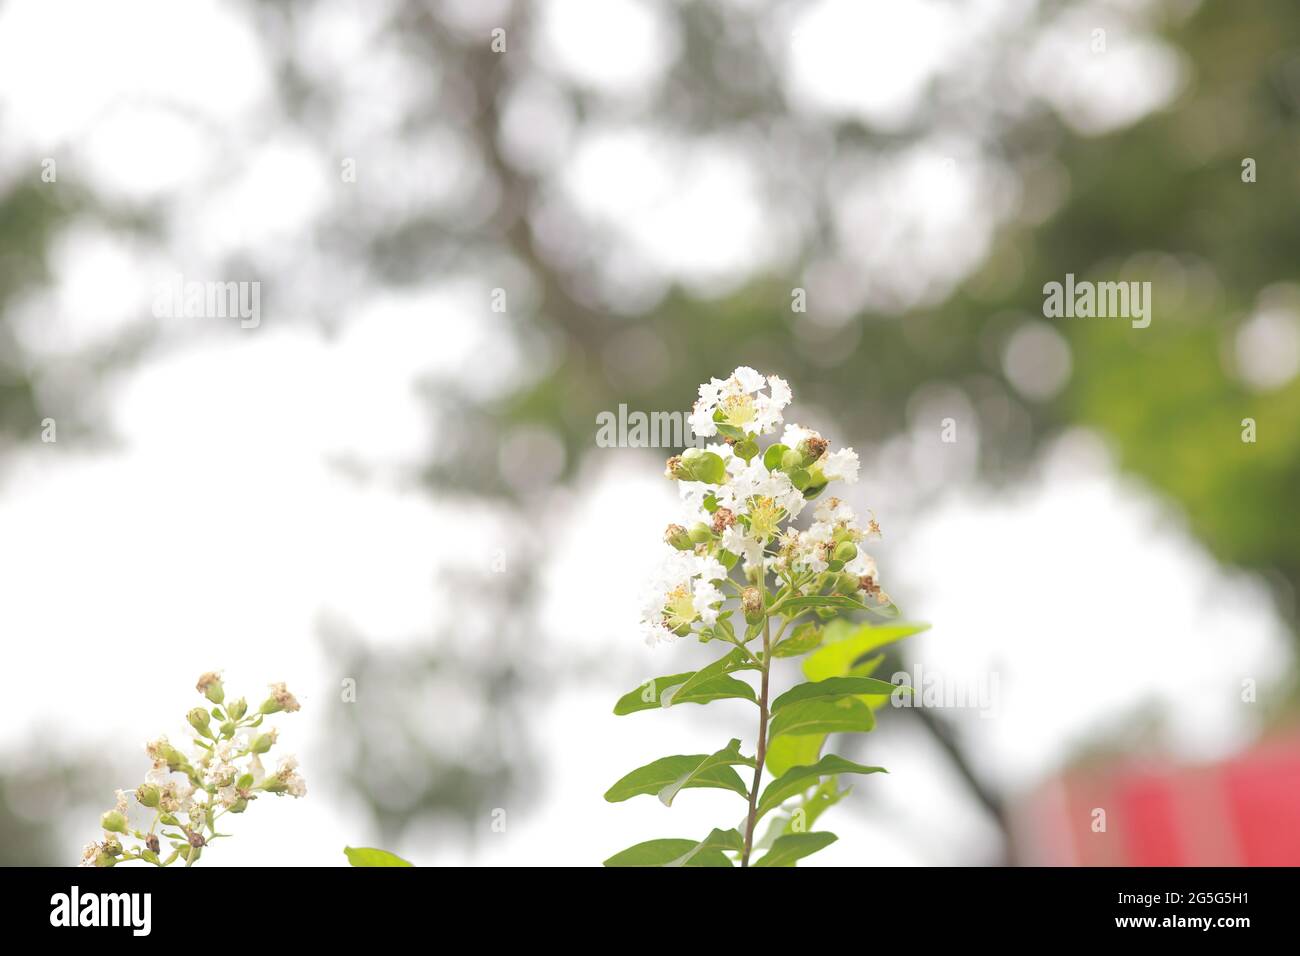 Lagerstroemia indica colza myrte fleurs Lythraceae arbre à feuilles caduques Banque D'Images